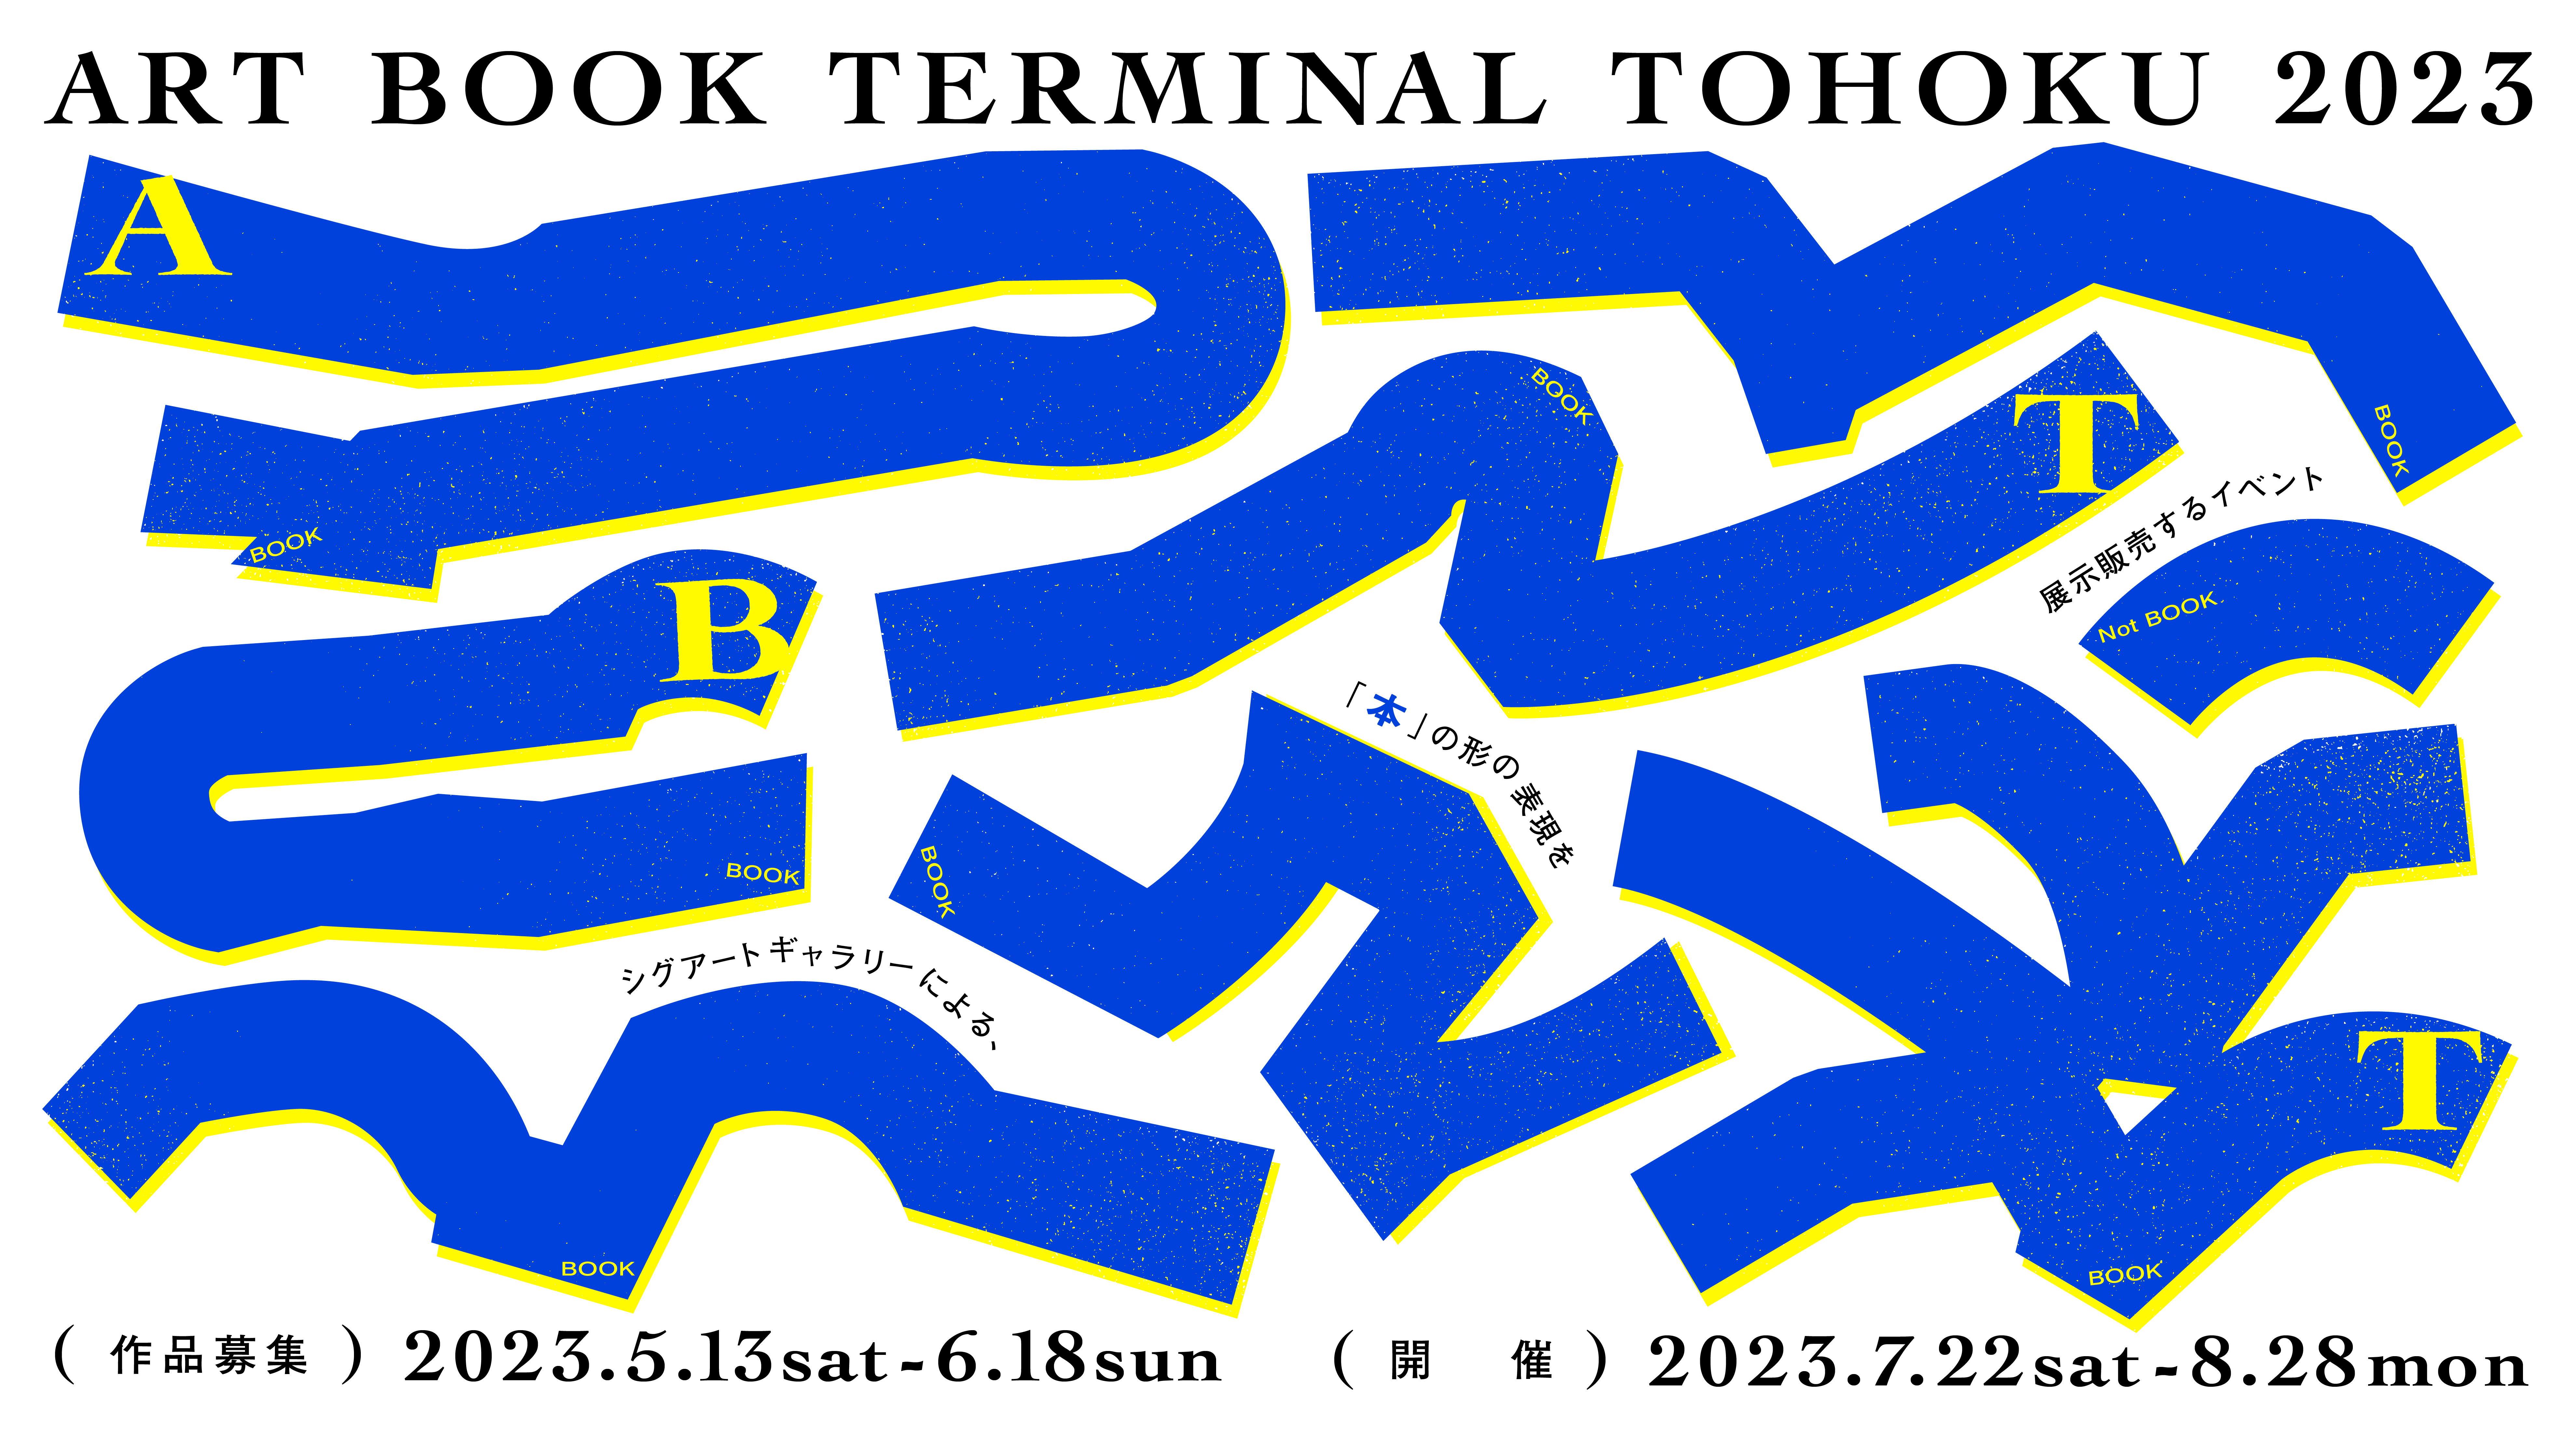 ART BOOK TERMINAL TOHOKU 2023